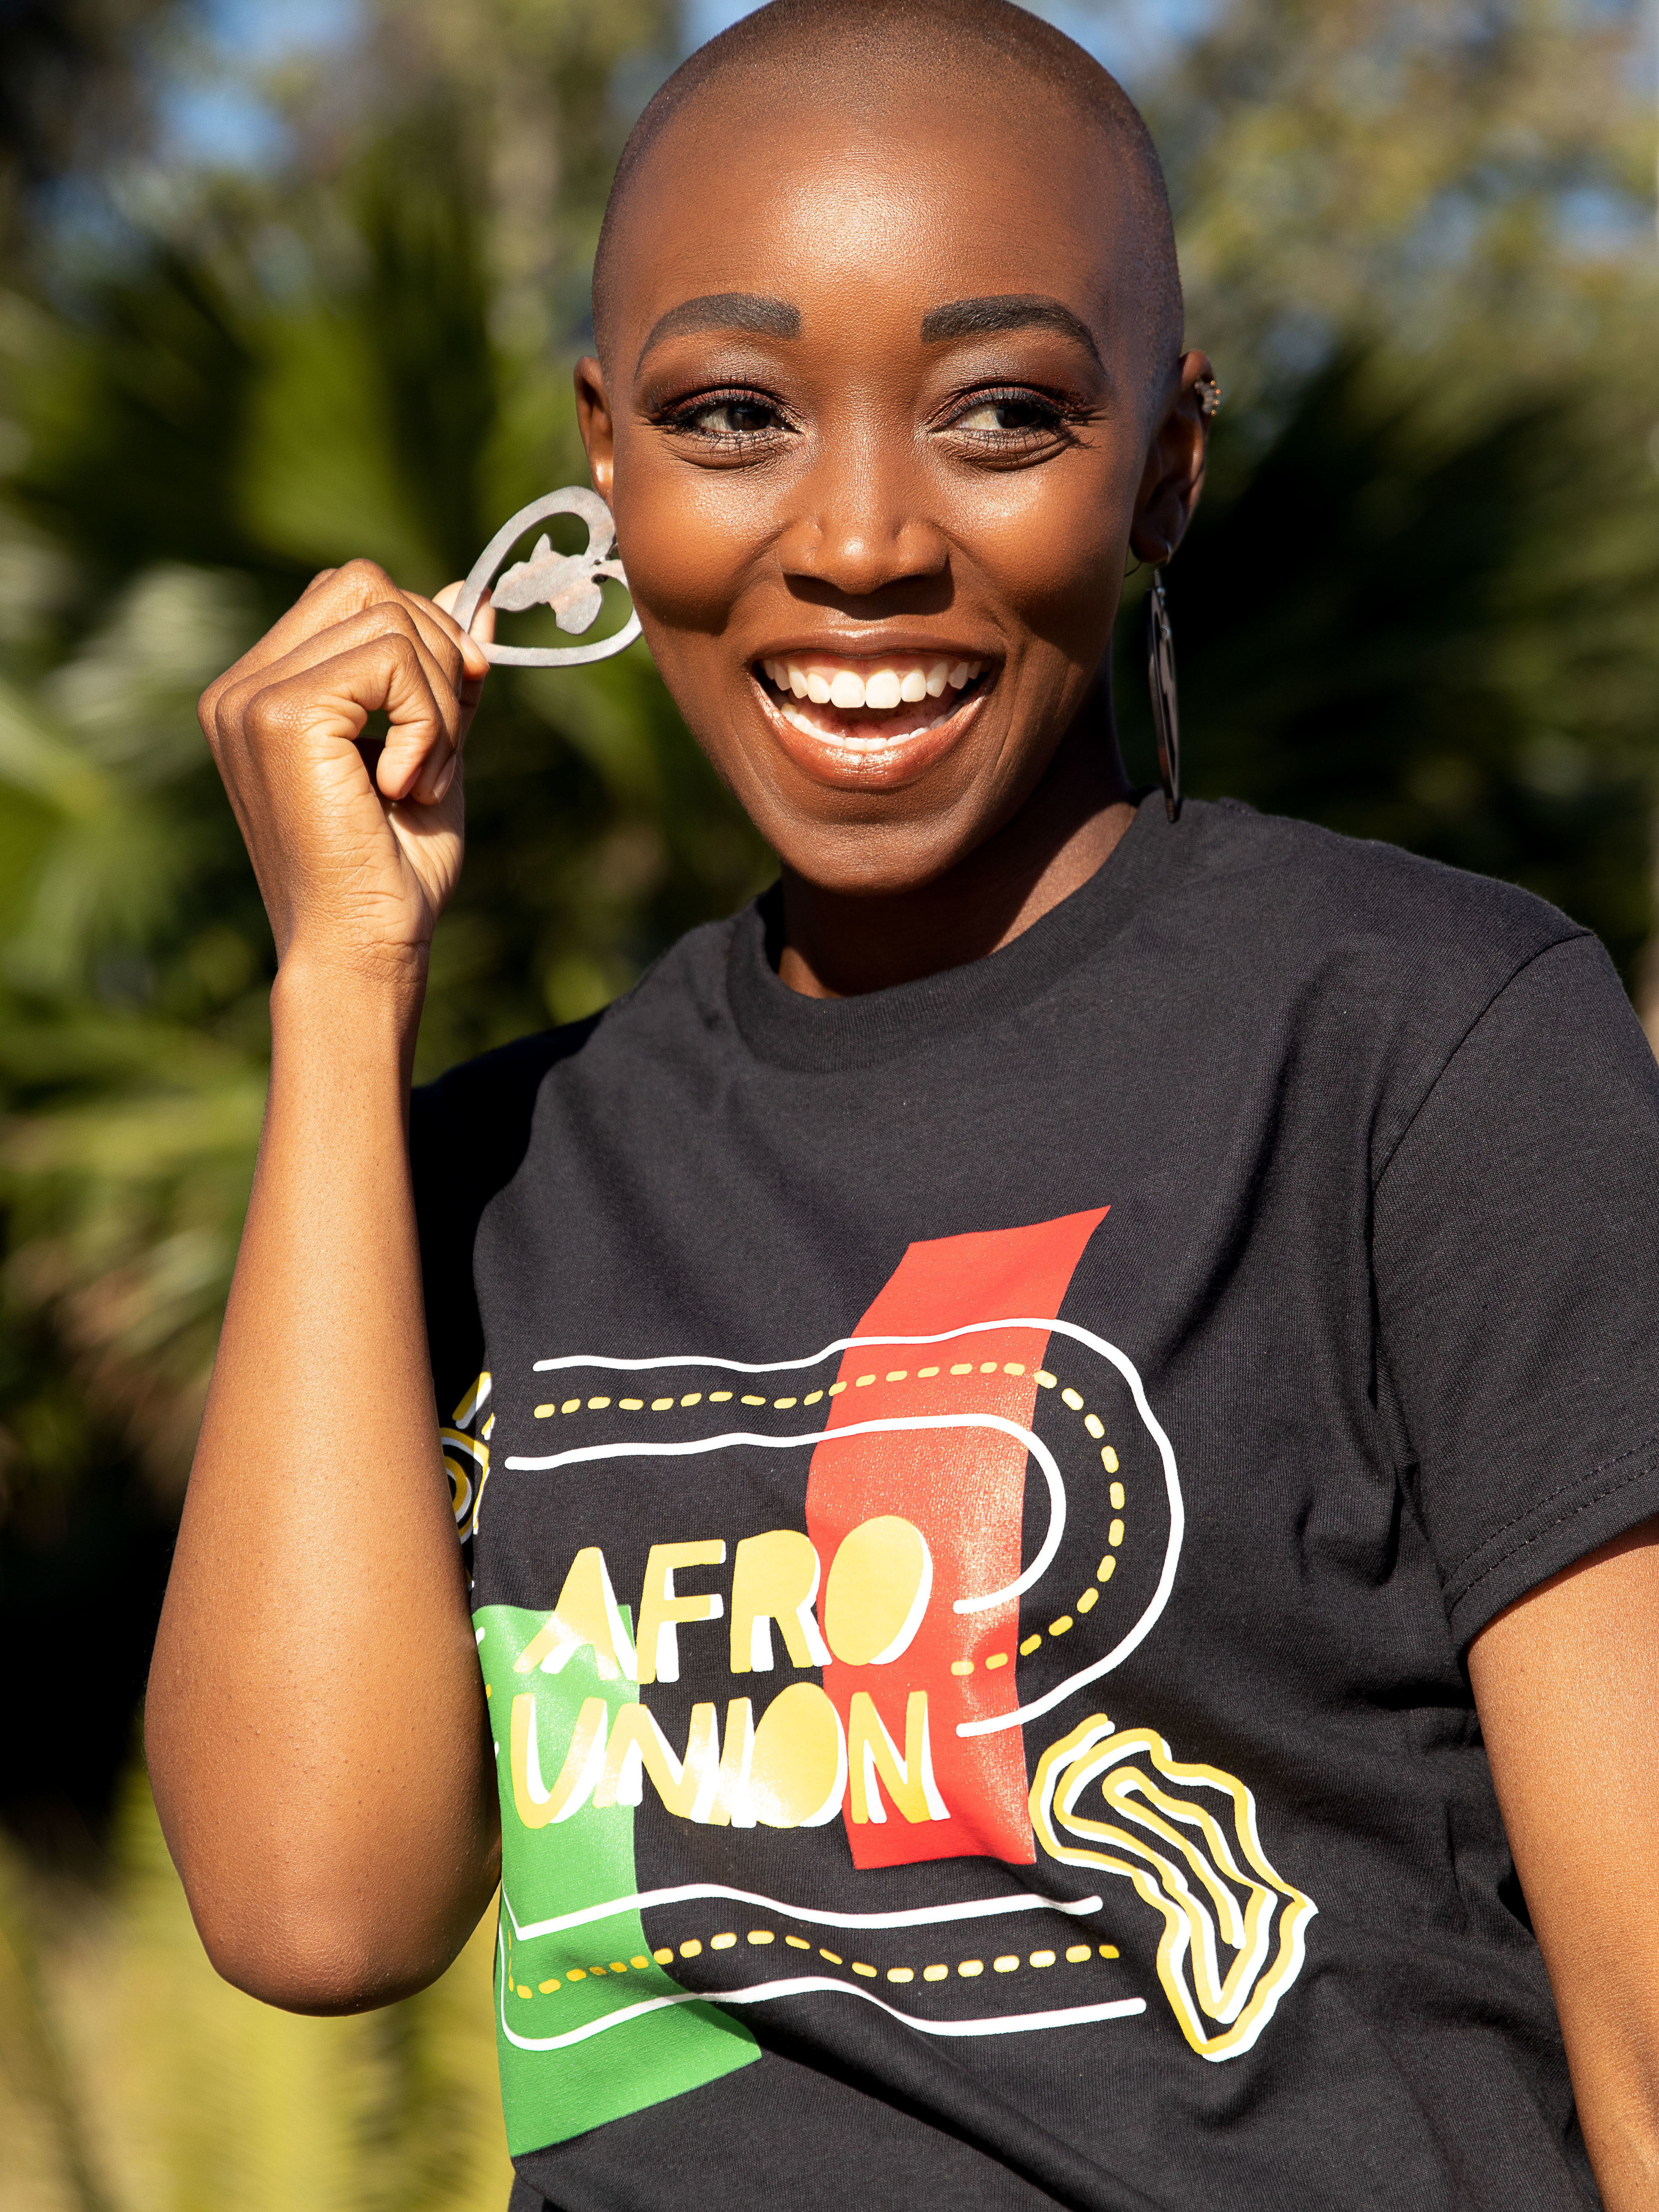 The AfroTrek T-shirt